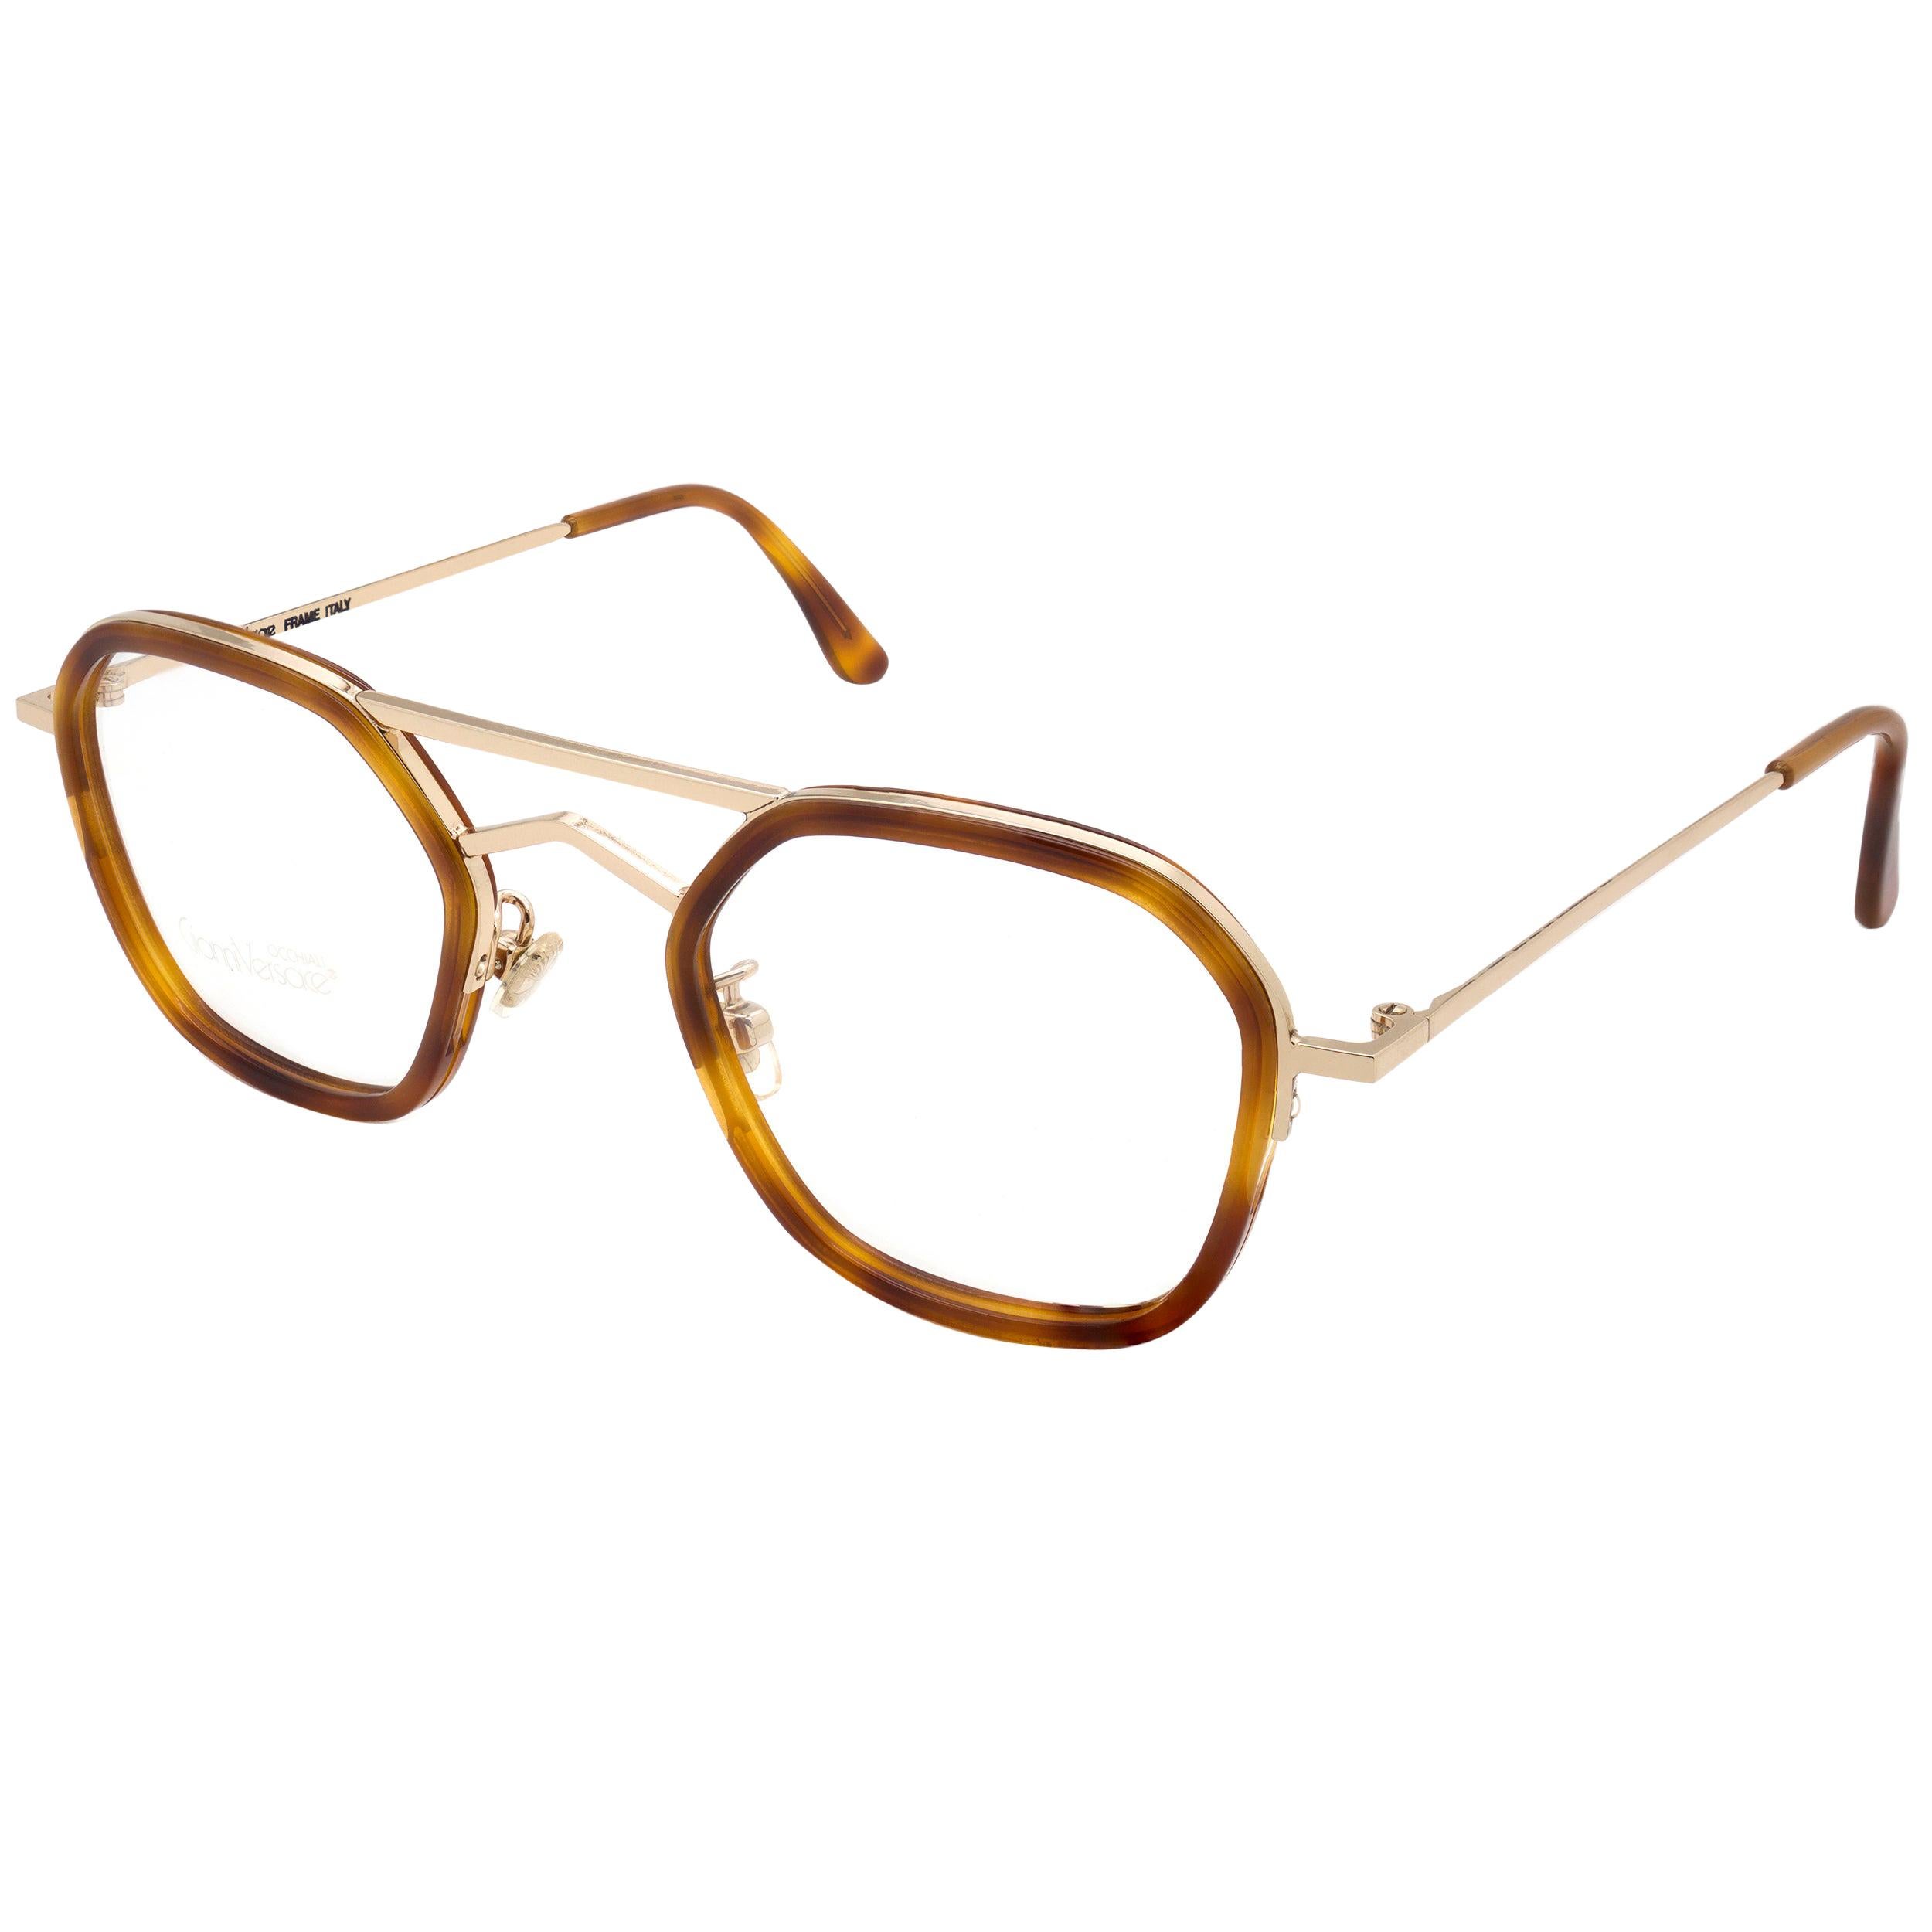 Gianni Versace vintage glasses frame